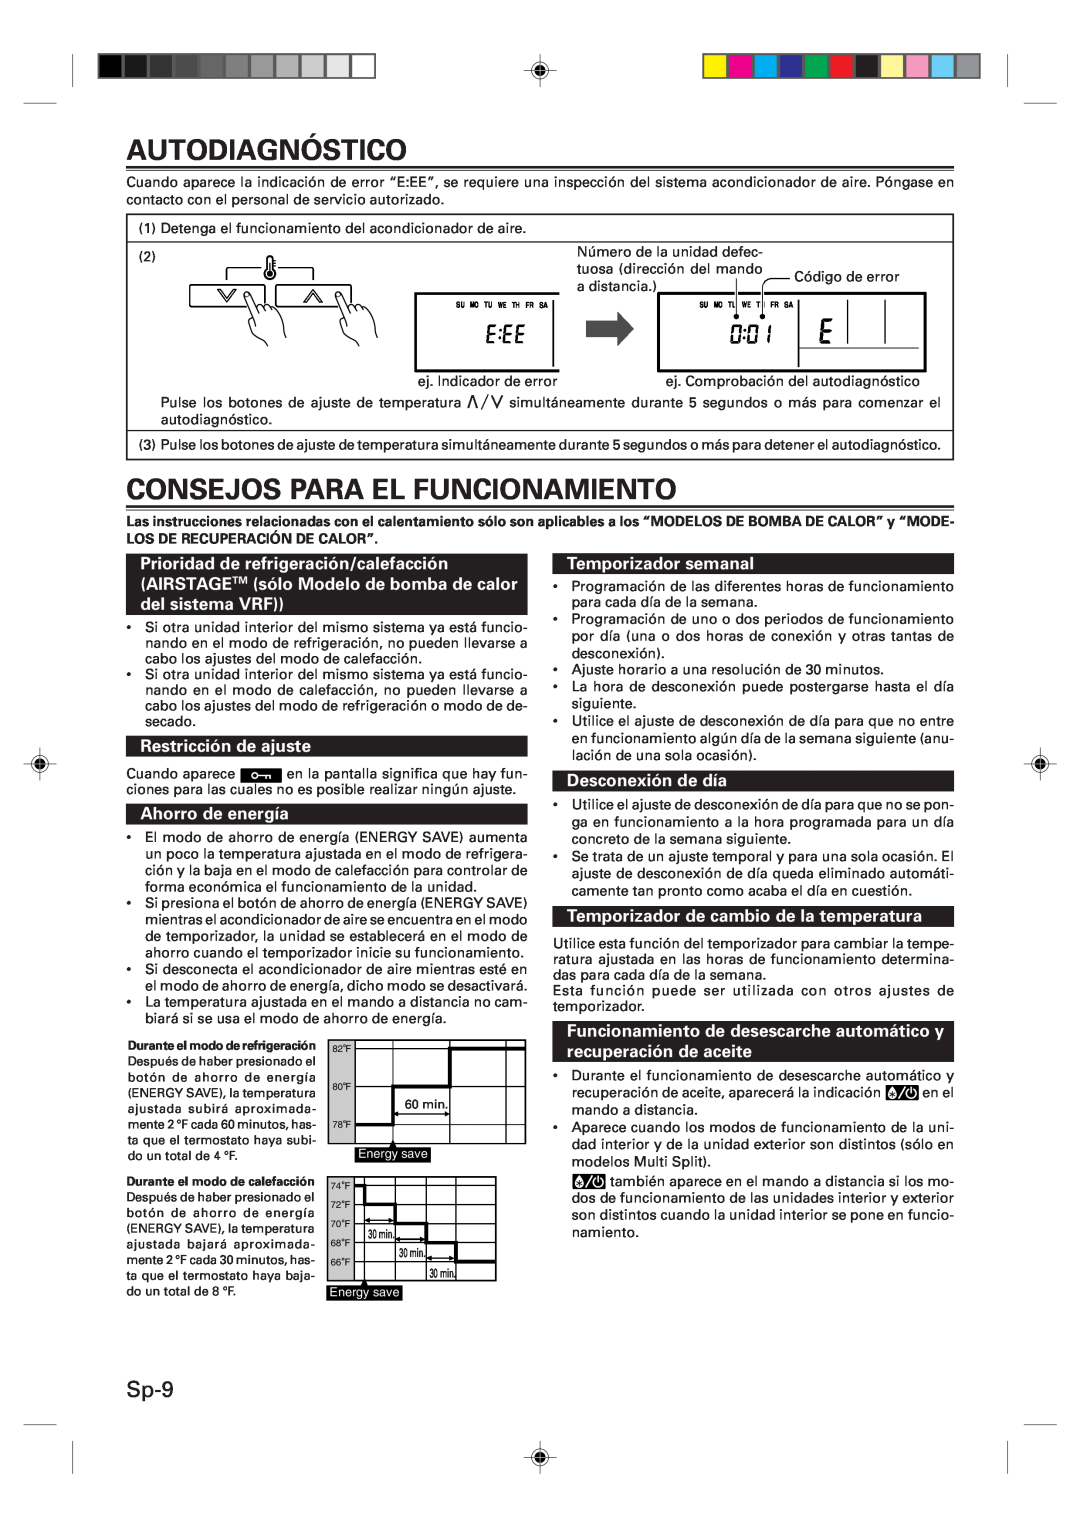 Fujitsu UTB-UUB manual Autodiagnóstico, Consejos Para El Funcionamiento, Sp-9, Restricción de ajuste, Ahorro de energía 